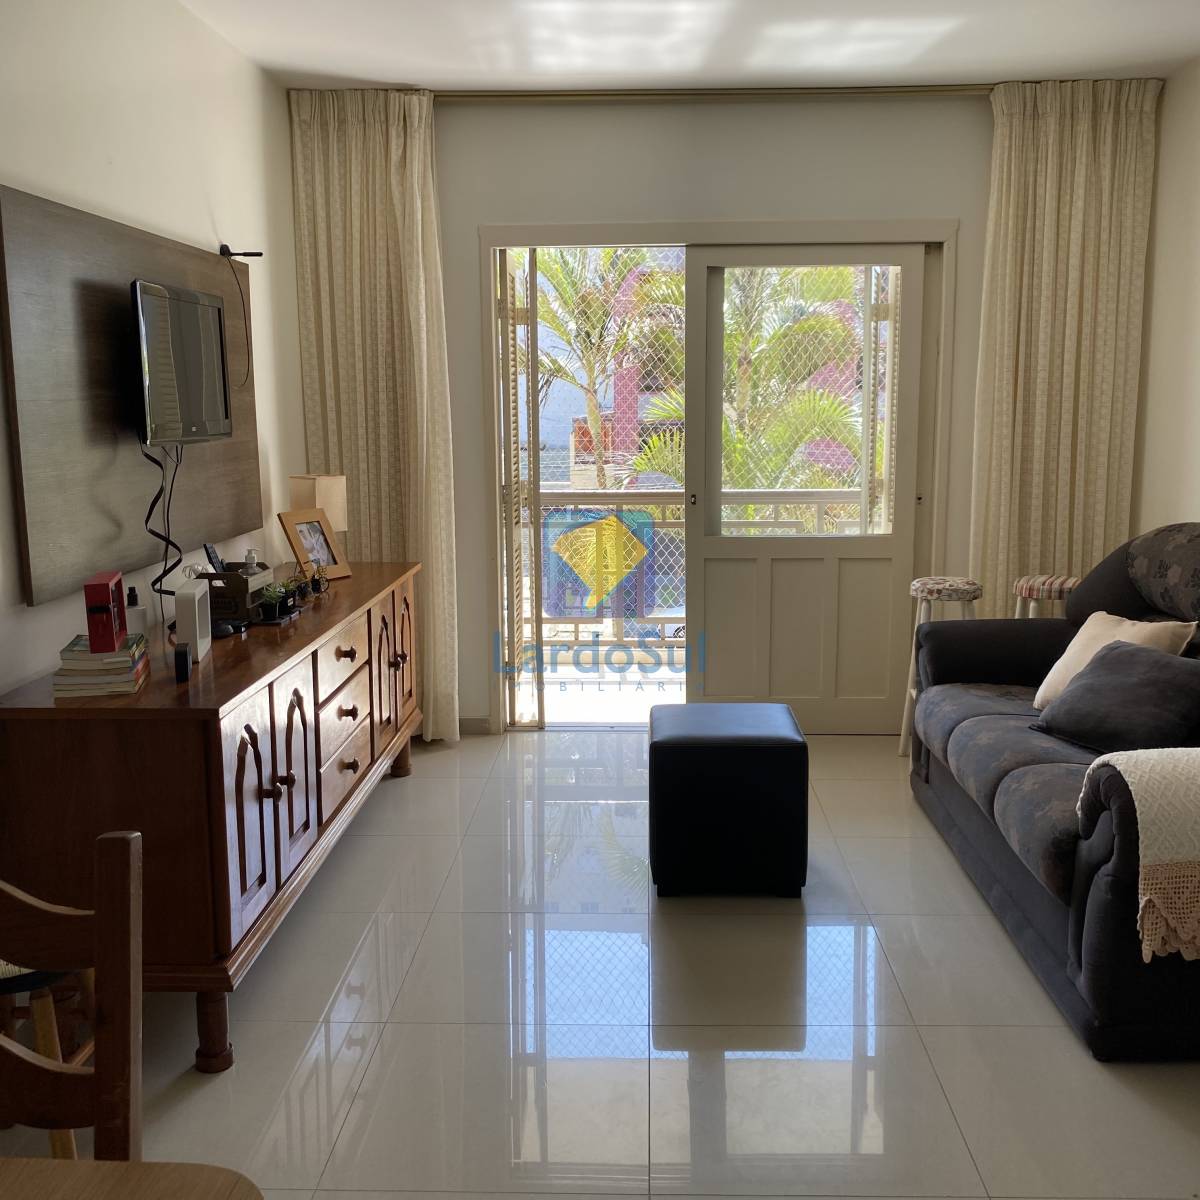 Apartamento c/ Dependência 3 dormitórios para temporada, Zona Nova em Capão da Canoa | Ref.: 3071